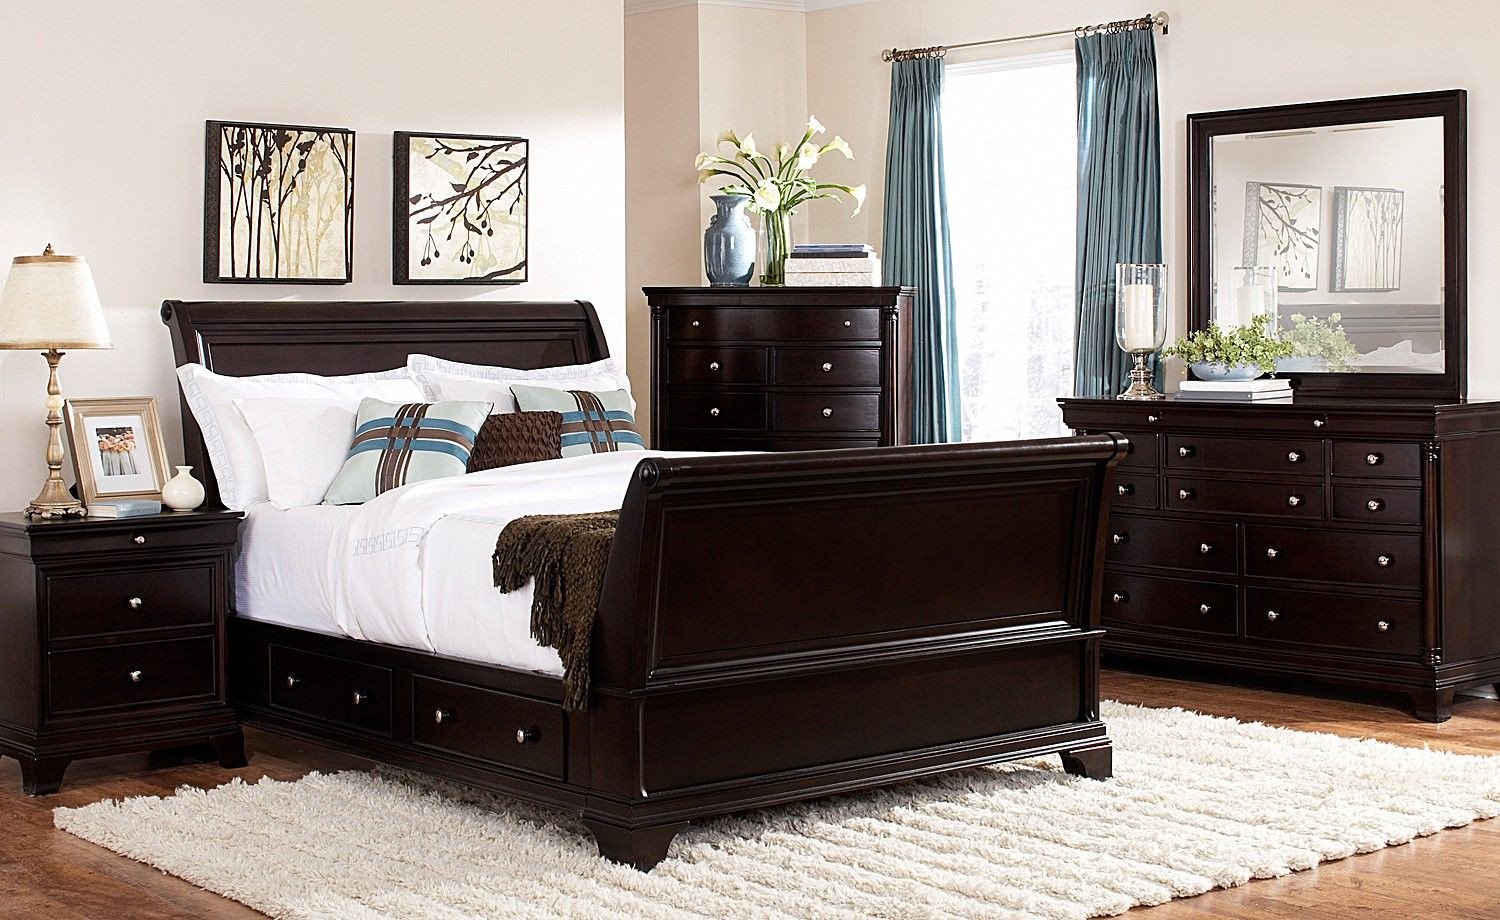 King Size Bedroom Set Inspirational Lakeshore Bedroom 7 Pc Queen Storage Bedroom Furniture